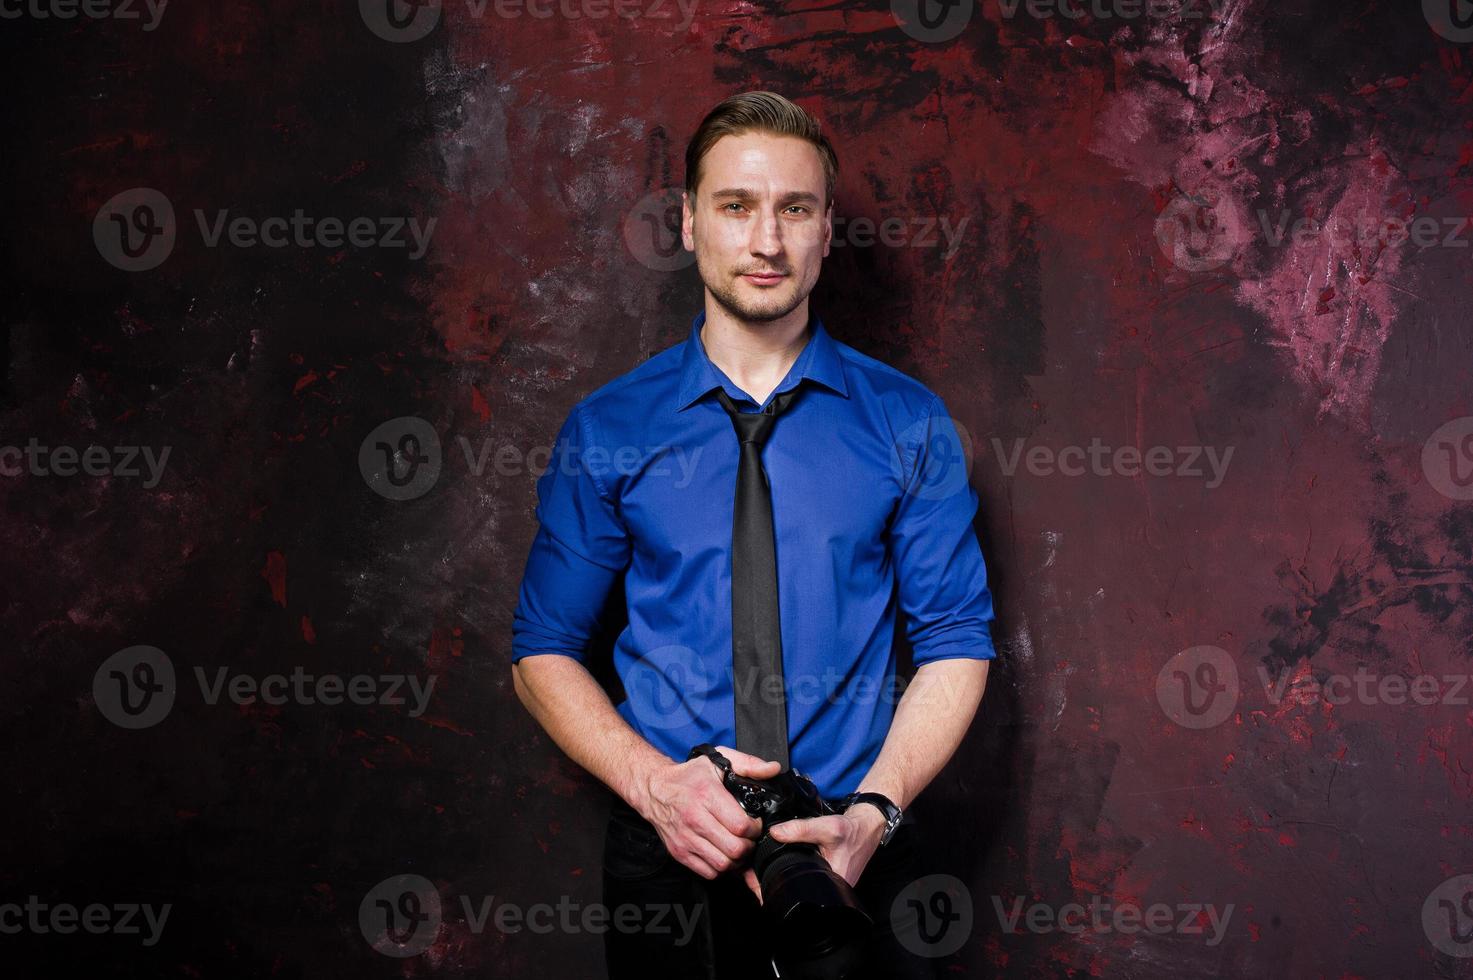 retrato de estudio de un elegante fotógrafo profesional con cámara, vestido con camisa azul y corbata. foto